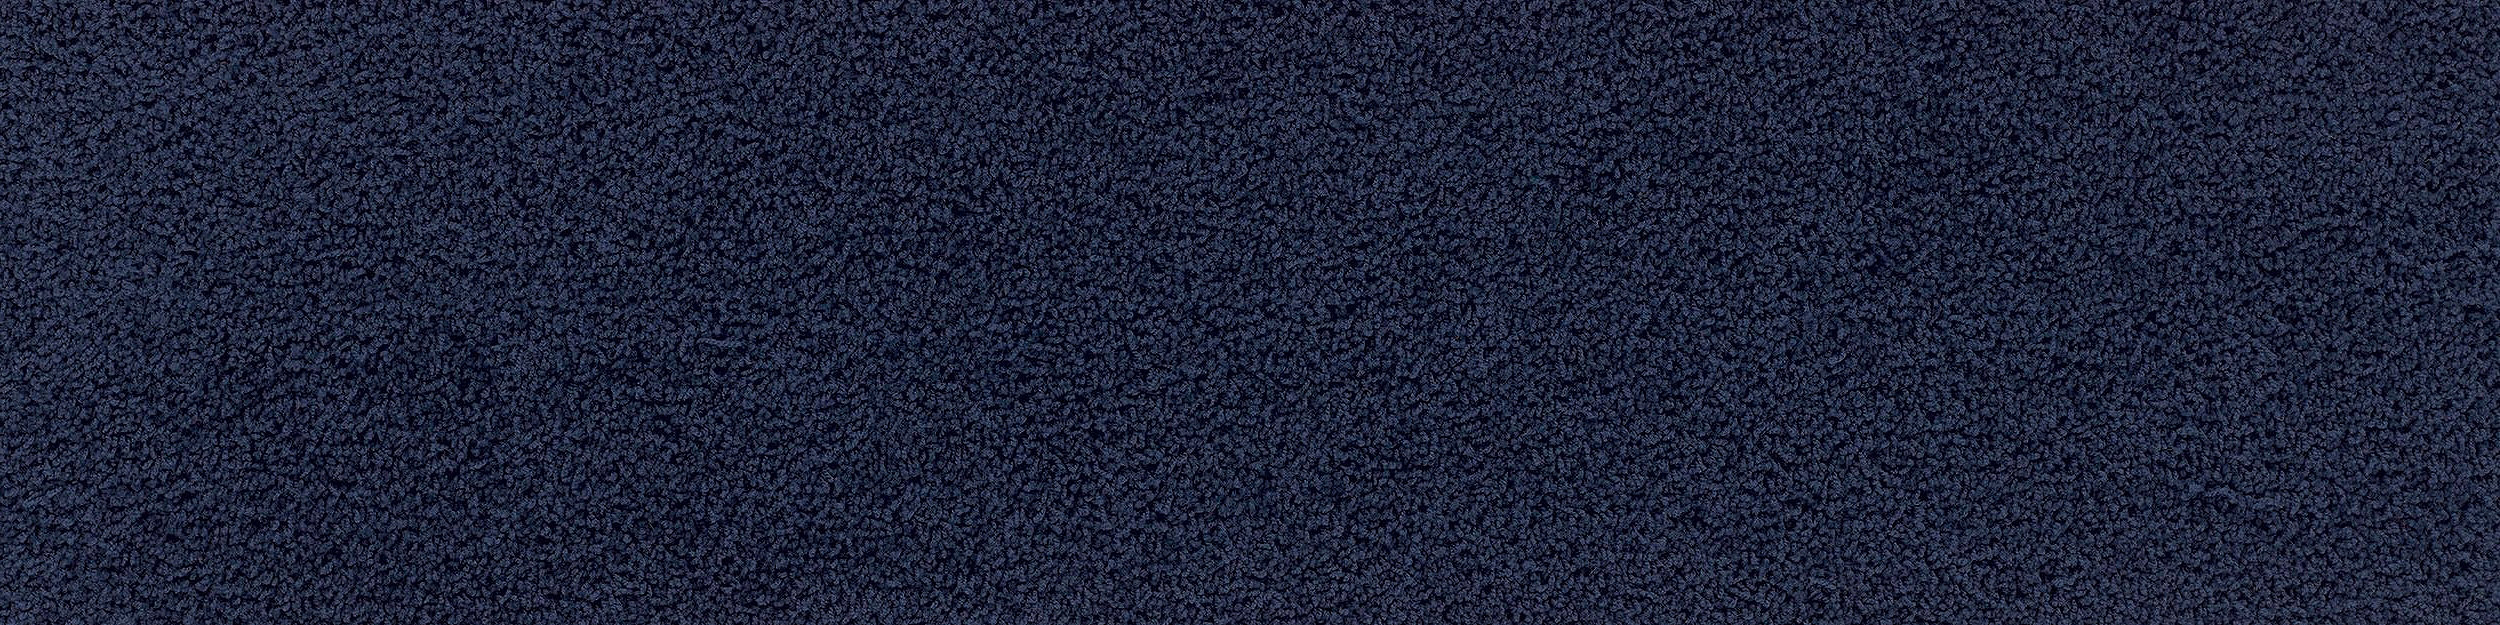 HN830 Carpet Tile In Cobalt Bildnummer 10